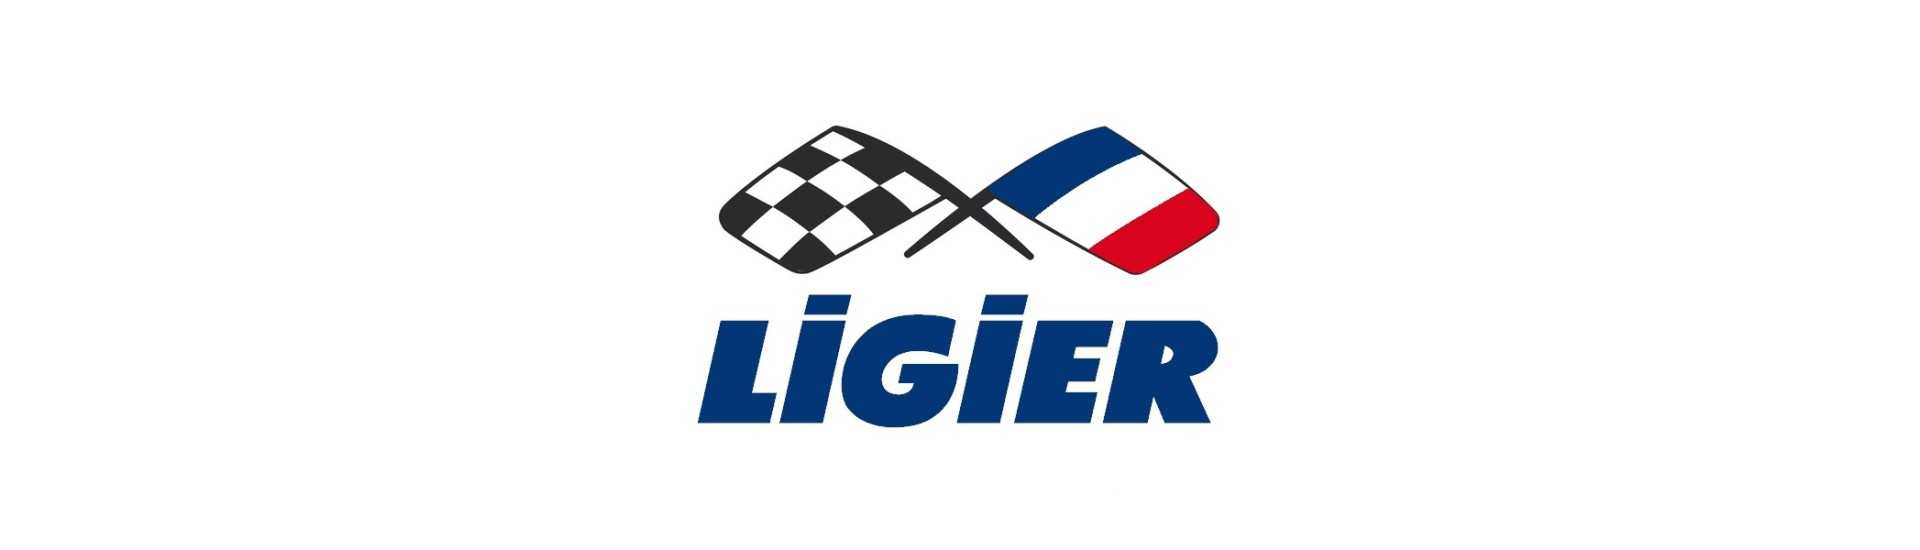 Motorradiator zum besten Preis für Auto ohne Lizenz Ligier